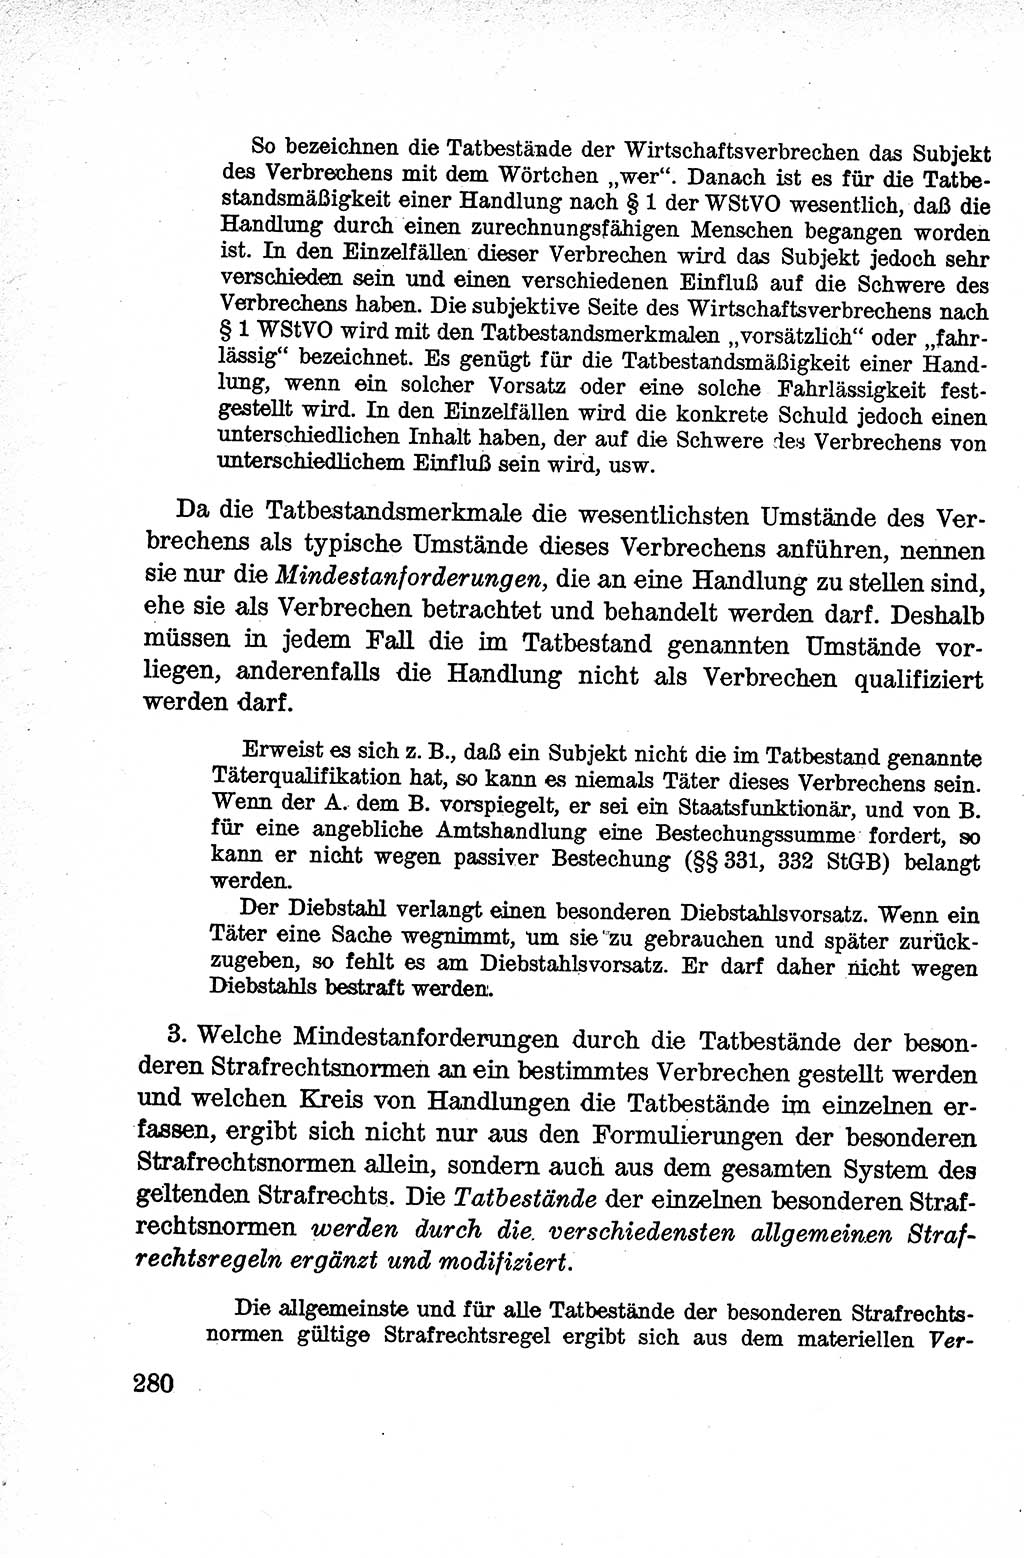 Lehrbuch des Strafrechts der Deutschen Demokratischen Republik (DDR), Allgemeiner Teil 1959, Seite 280 (Lb. Strafr. DDR AT 1959, S. 280)